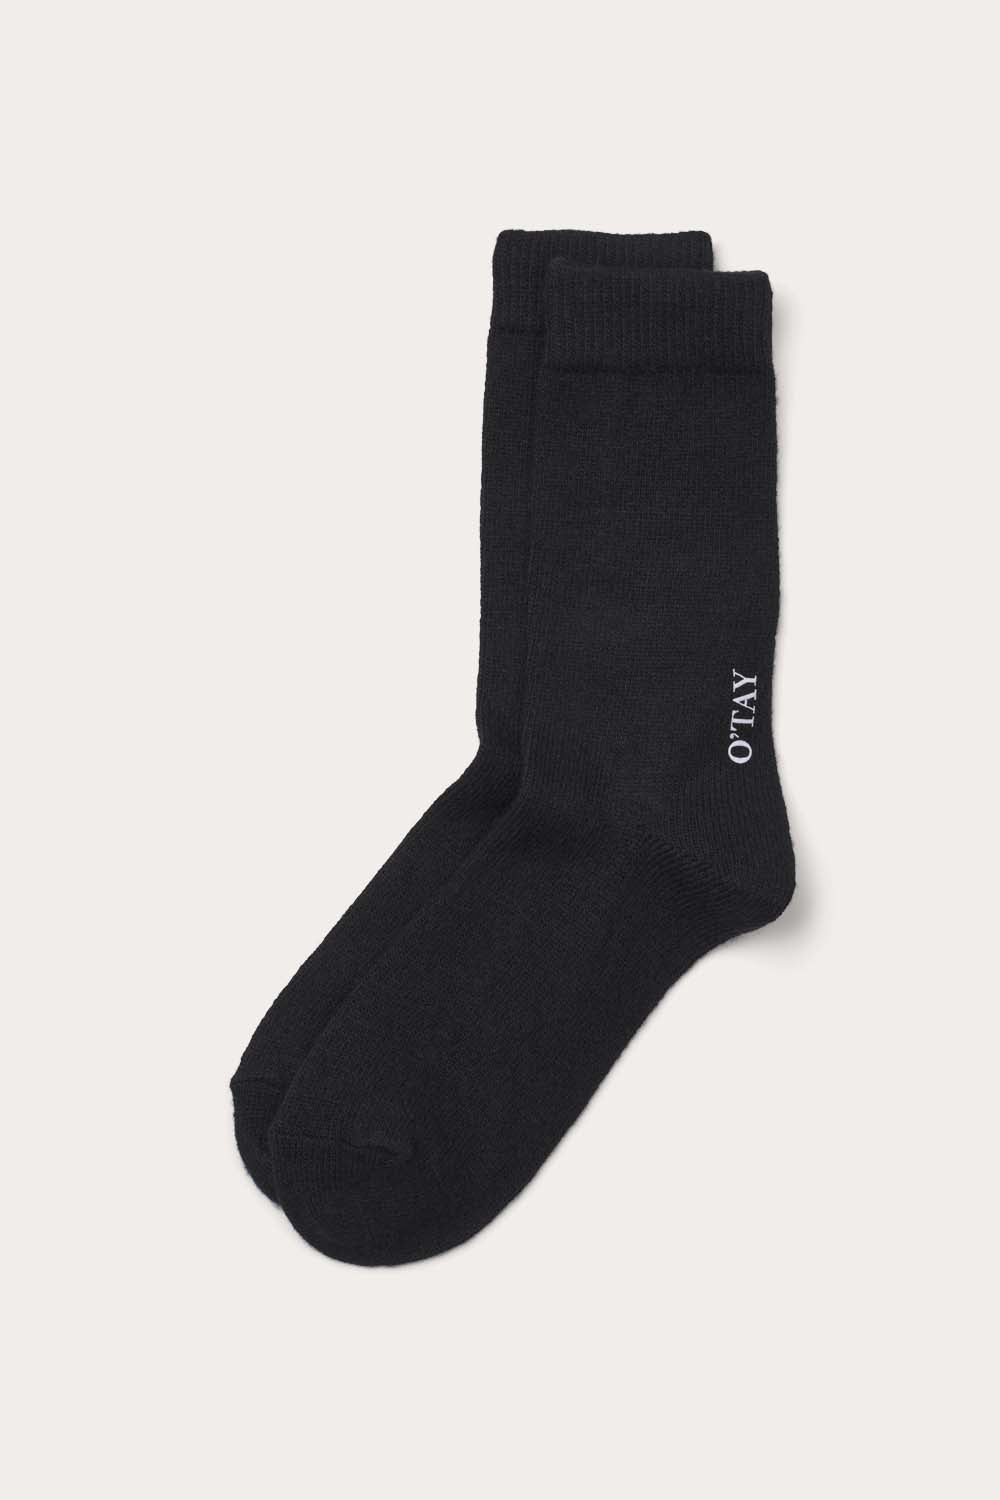 O'TAY Socks Blend Accessories Black